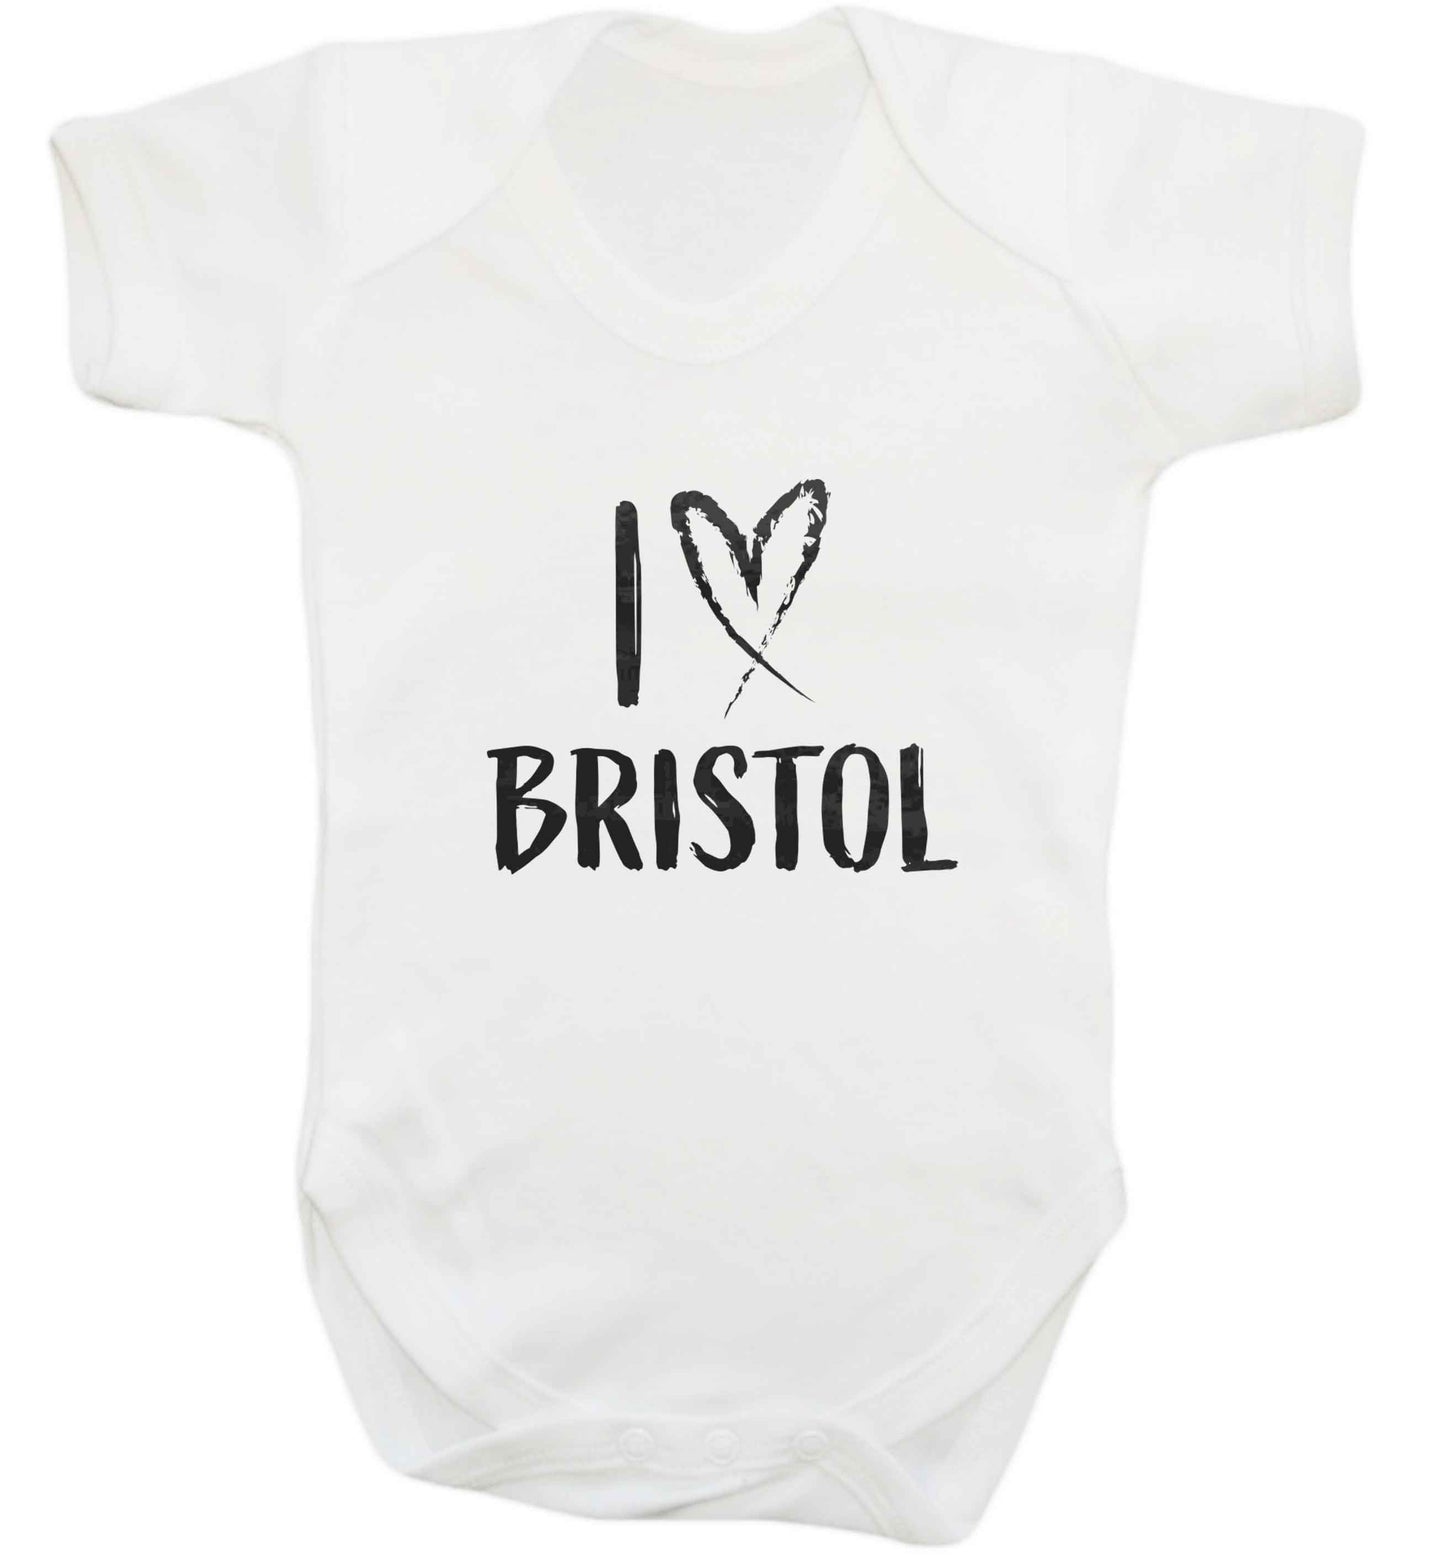 I love Bristol baby vest white 18-24 months